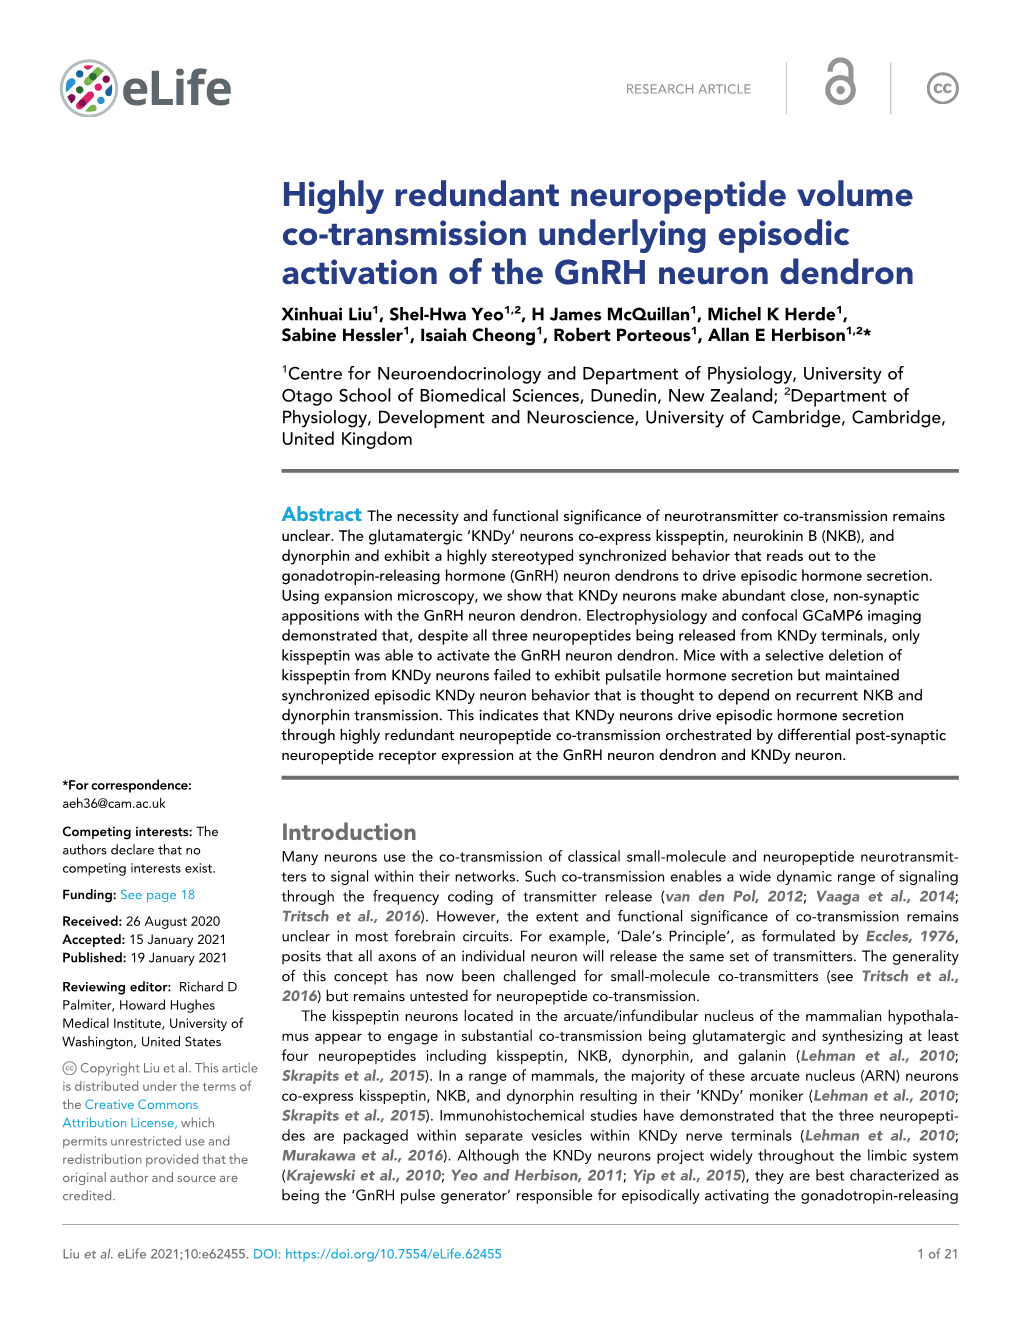 Highly Redundant Neuropeptide Volume Co